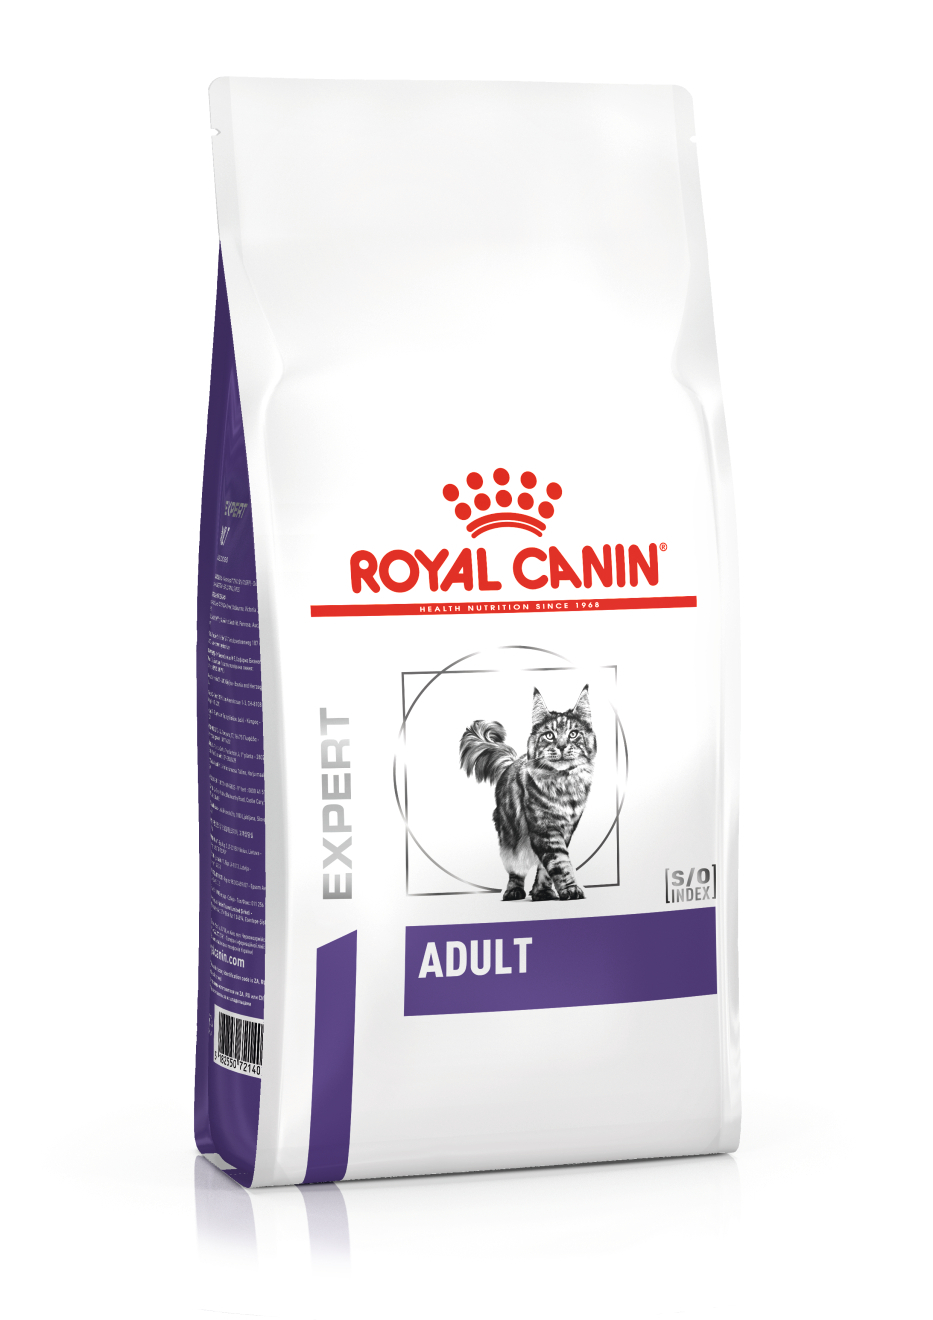 Royal Canin Expert Adult pienso para gatos